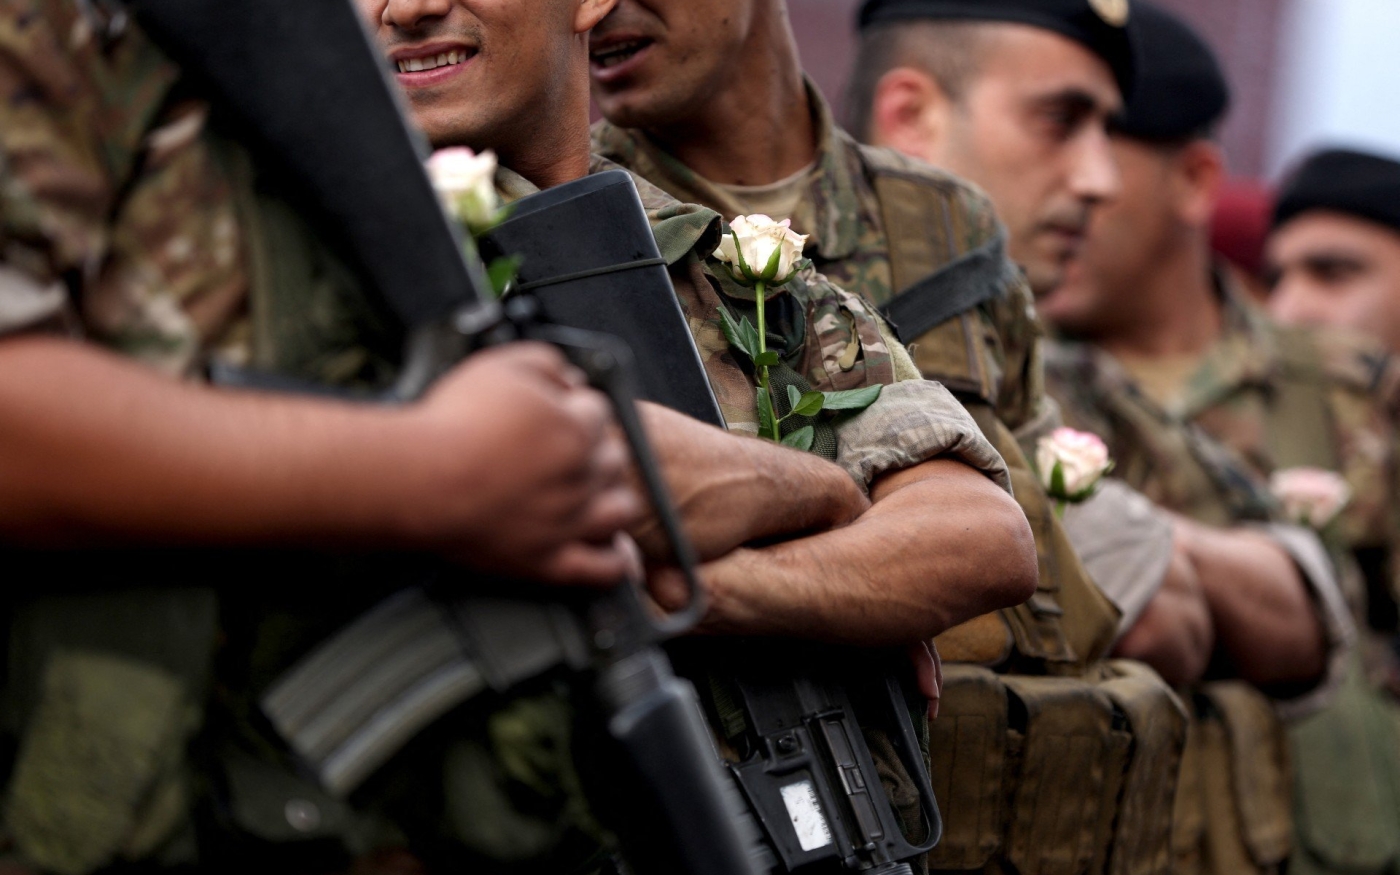 Des soldats libanais portent des roses offertes par des manifestants anti-gouvernementaux dans la région de Jal al-Dib, le 23 octobre 2019 (AFP)